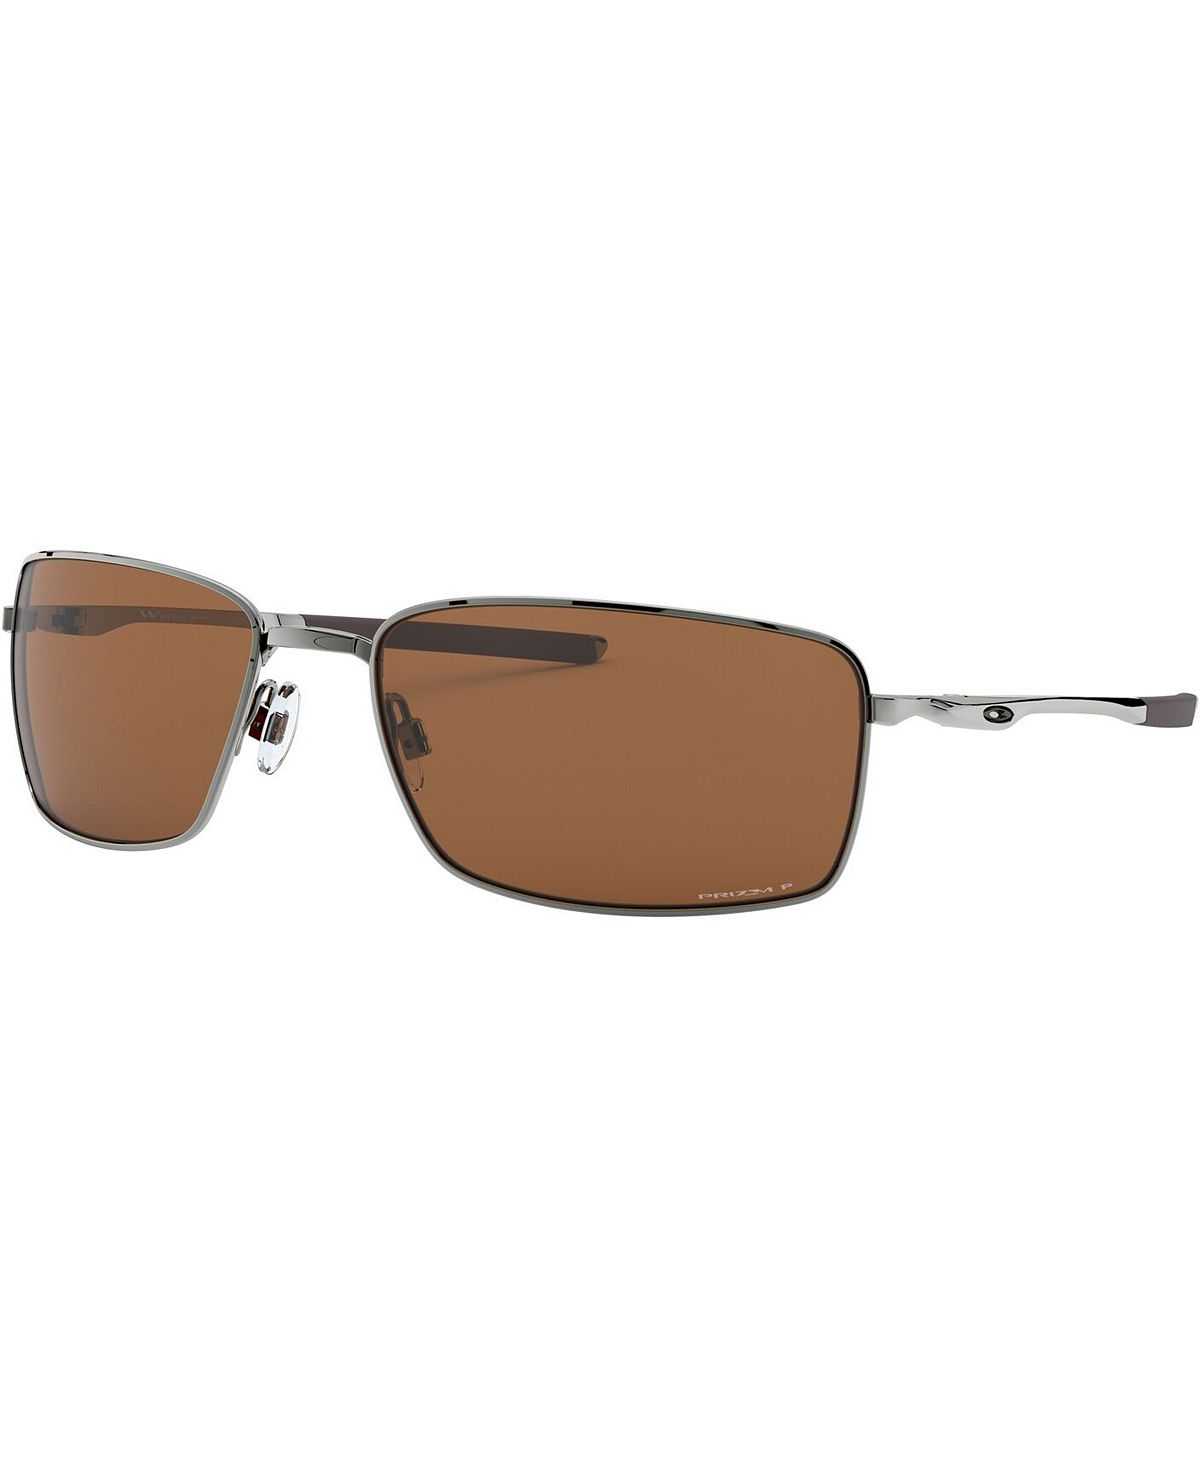 Поляризационные солнцезащитные очки SQUARE WIRE, OO4075 Oakley